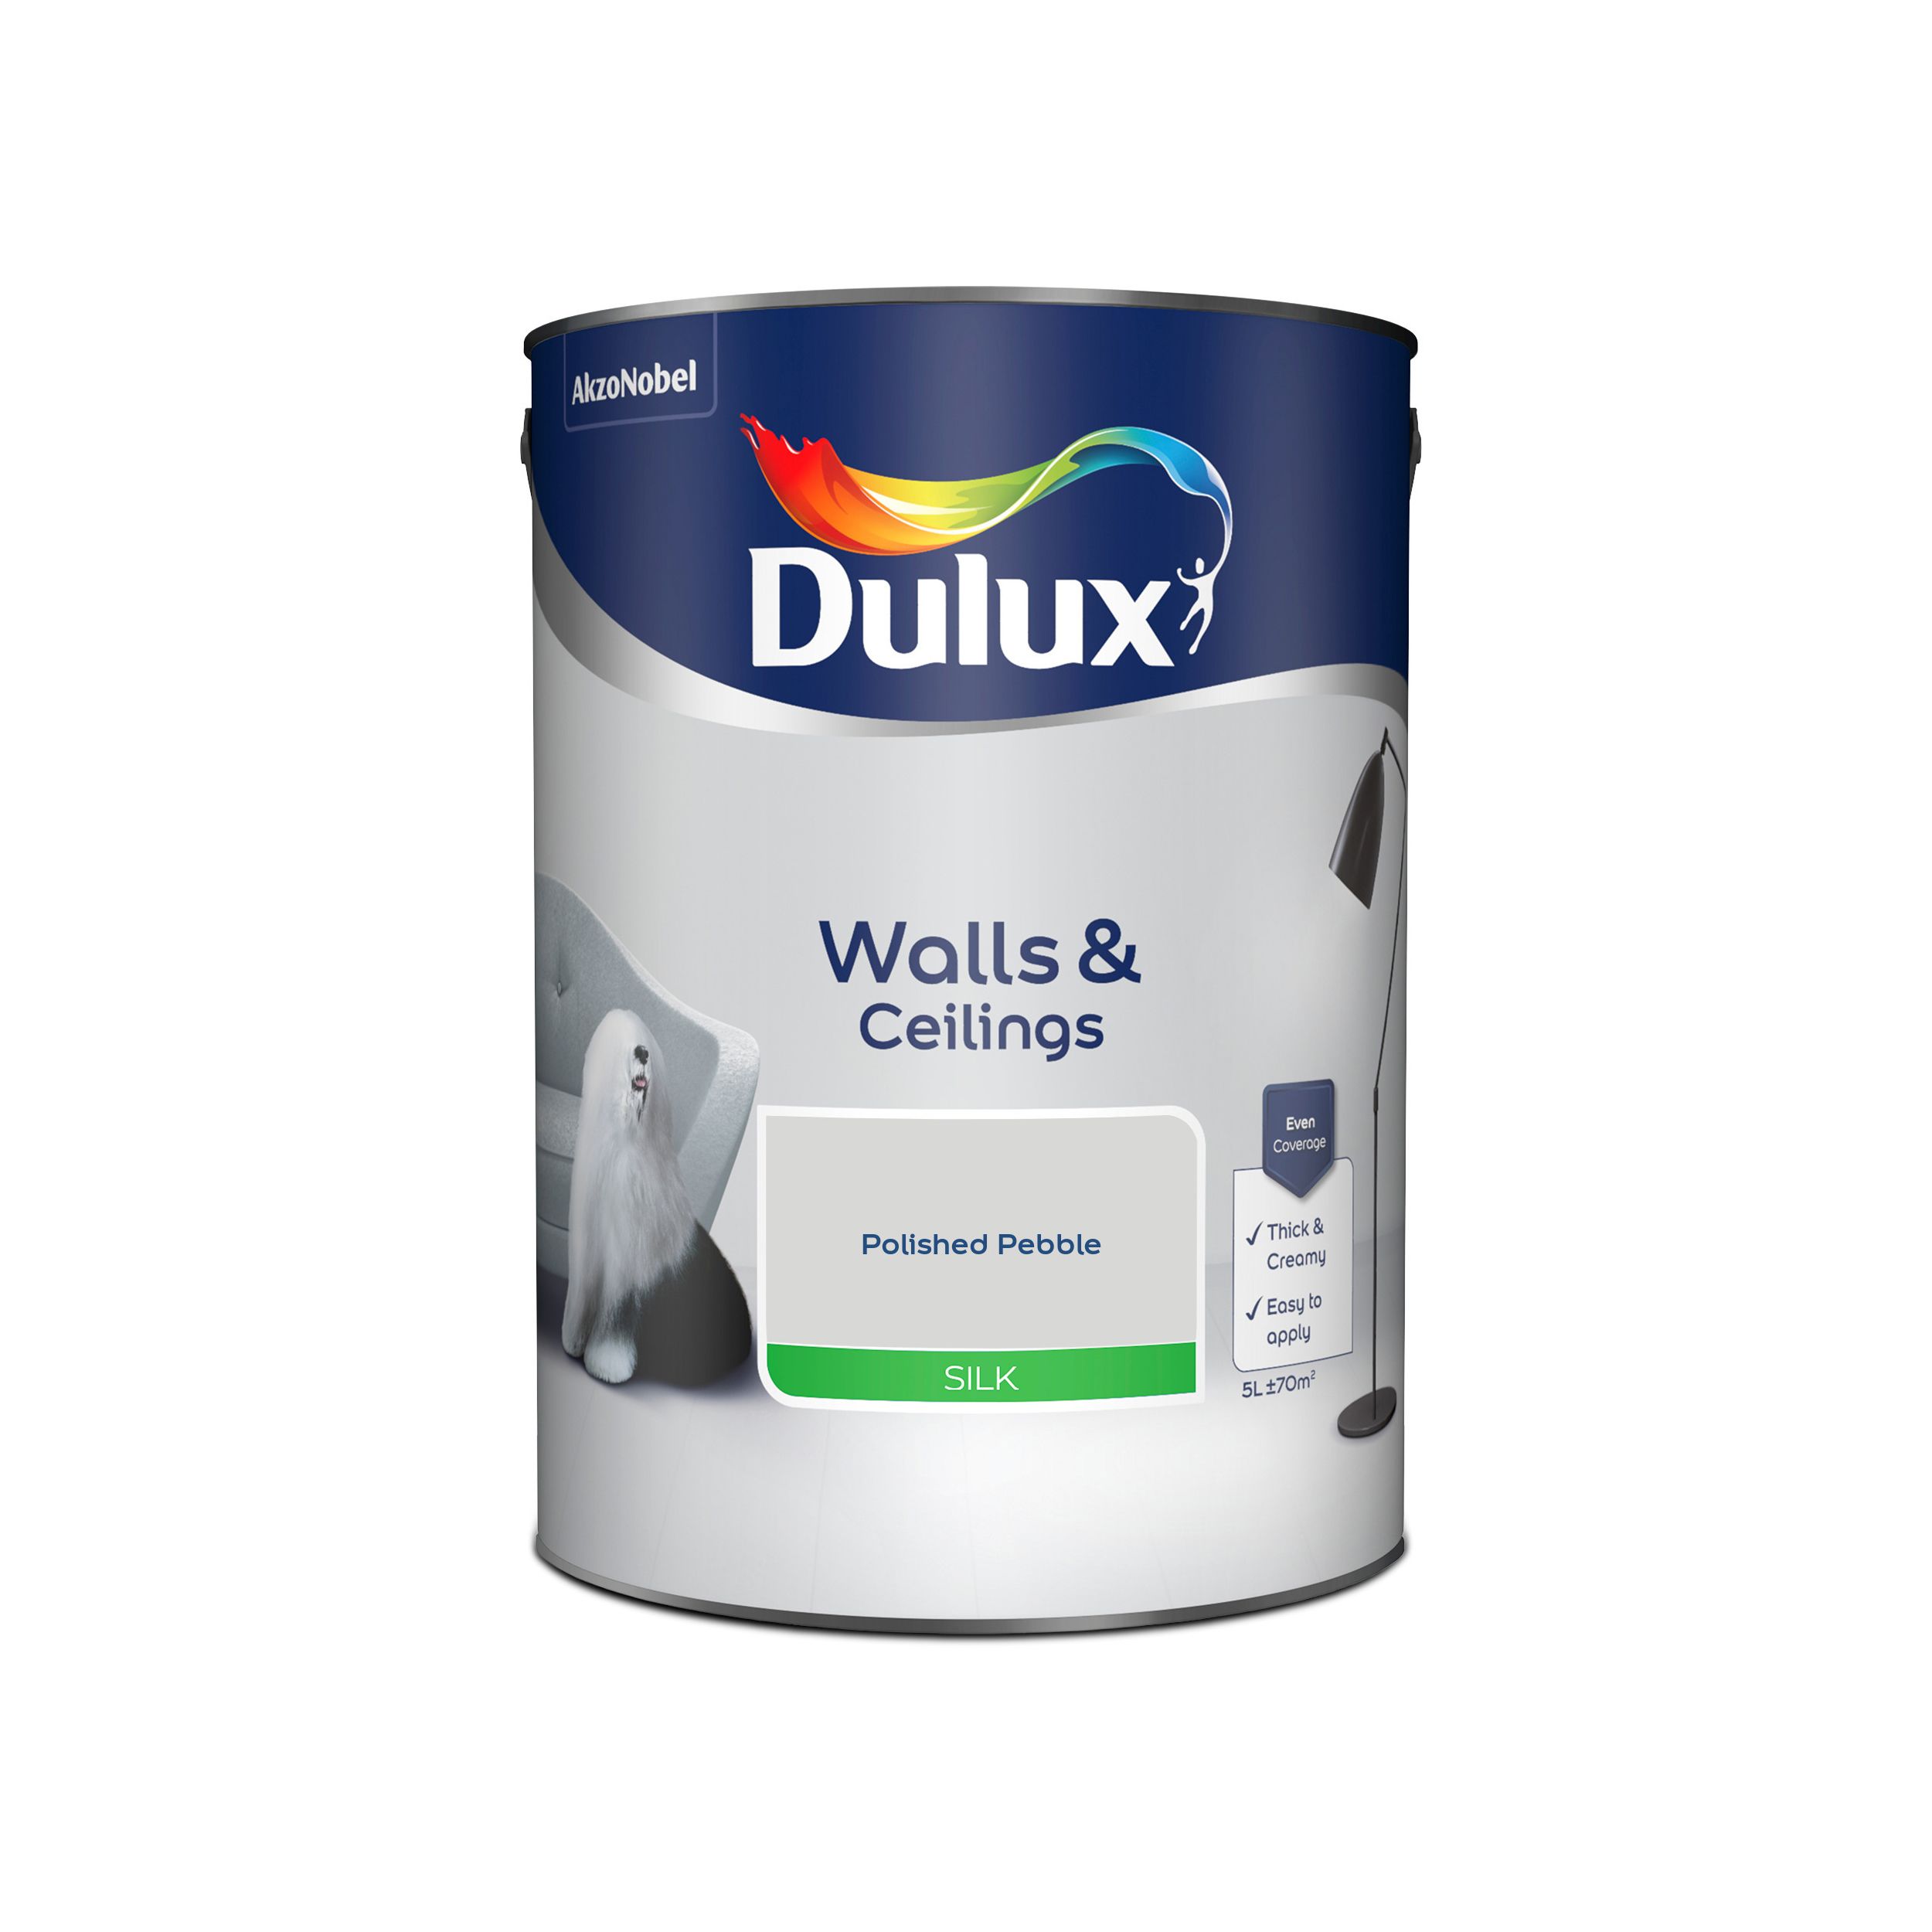 Dulux Walls & ceilings Polished pebble Silk Emulsion paint, 5L